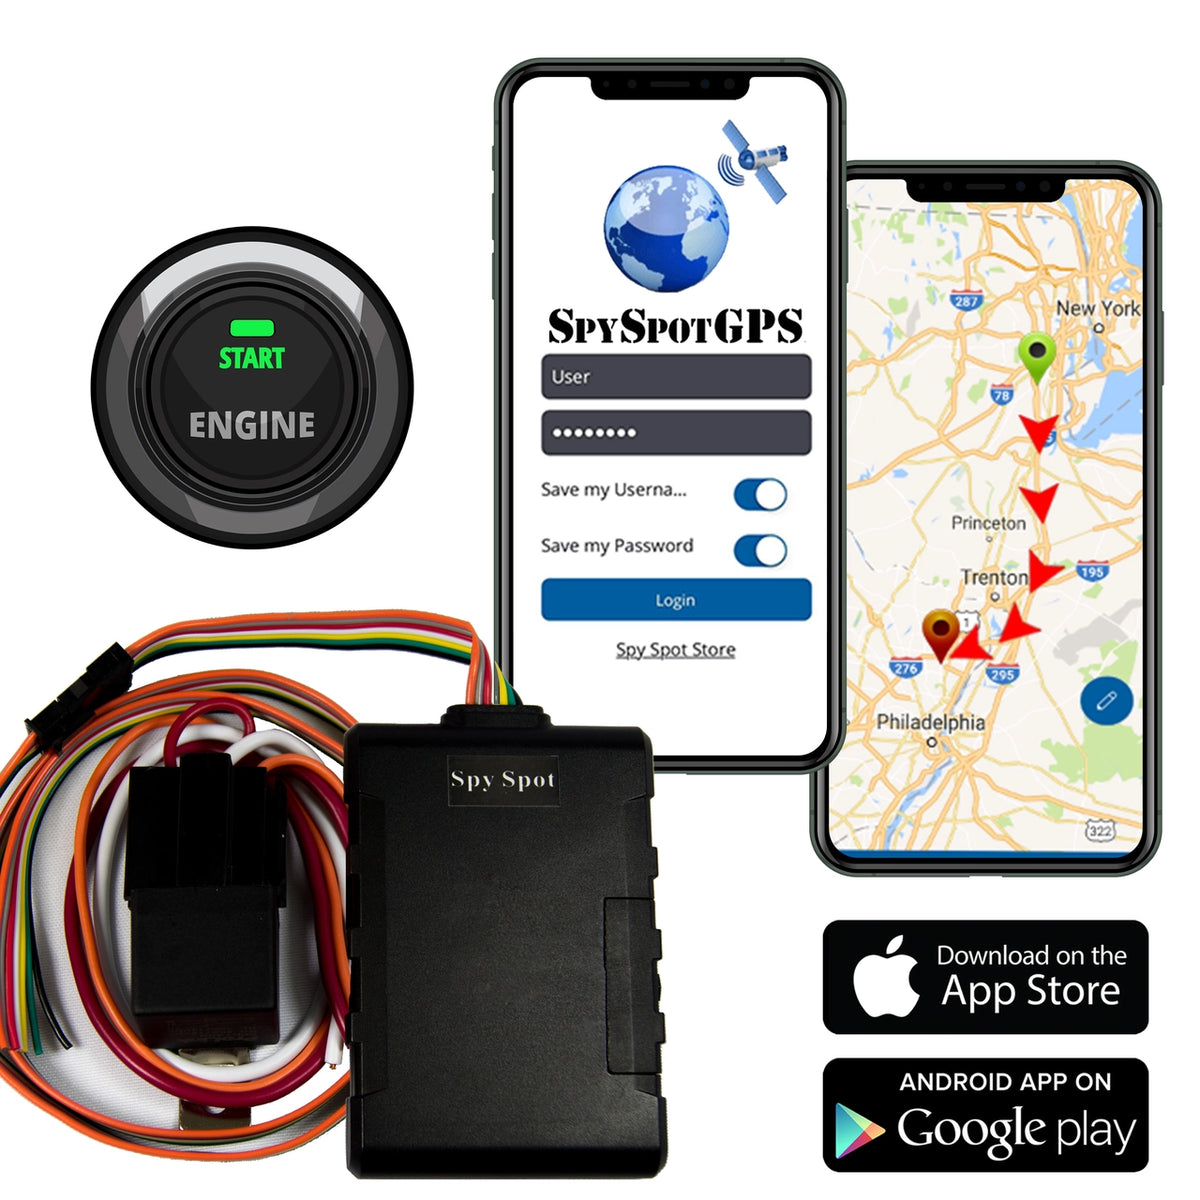 Arbejdsgiver En eller anden måde neutral Hardwired GPS Tracker Remote Kill Switch for Car | Shop Spy-Spot.com